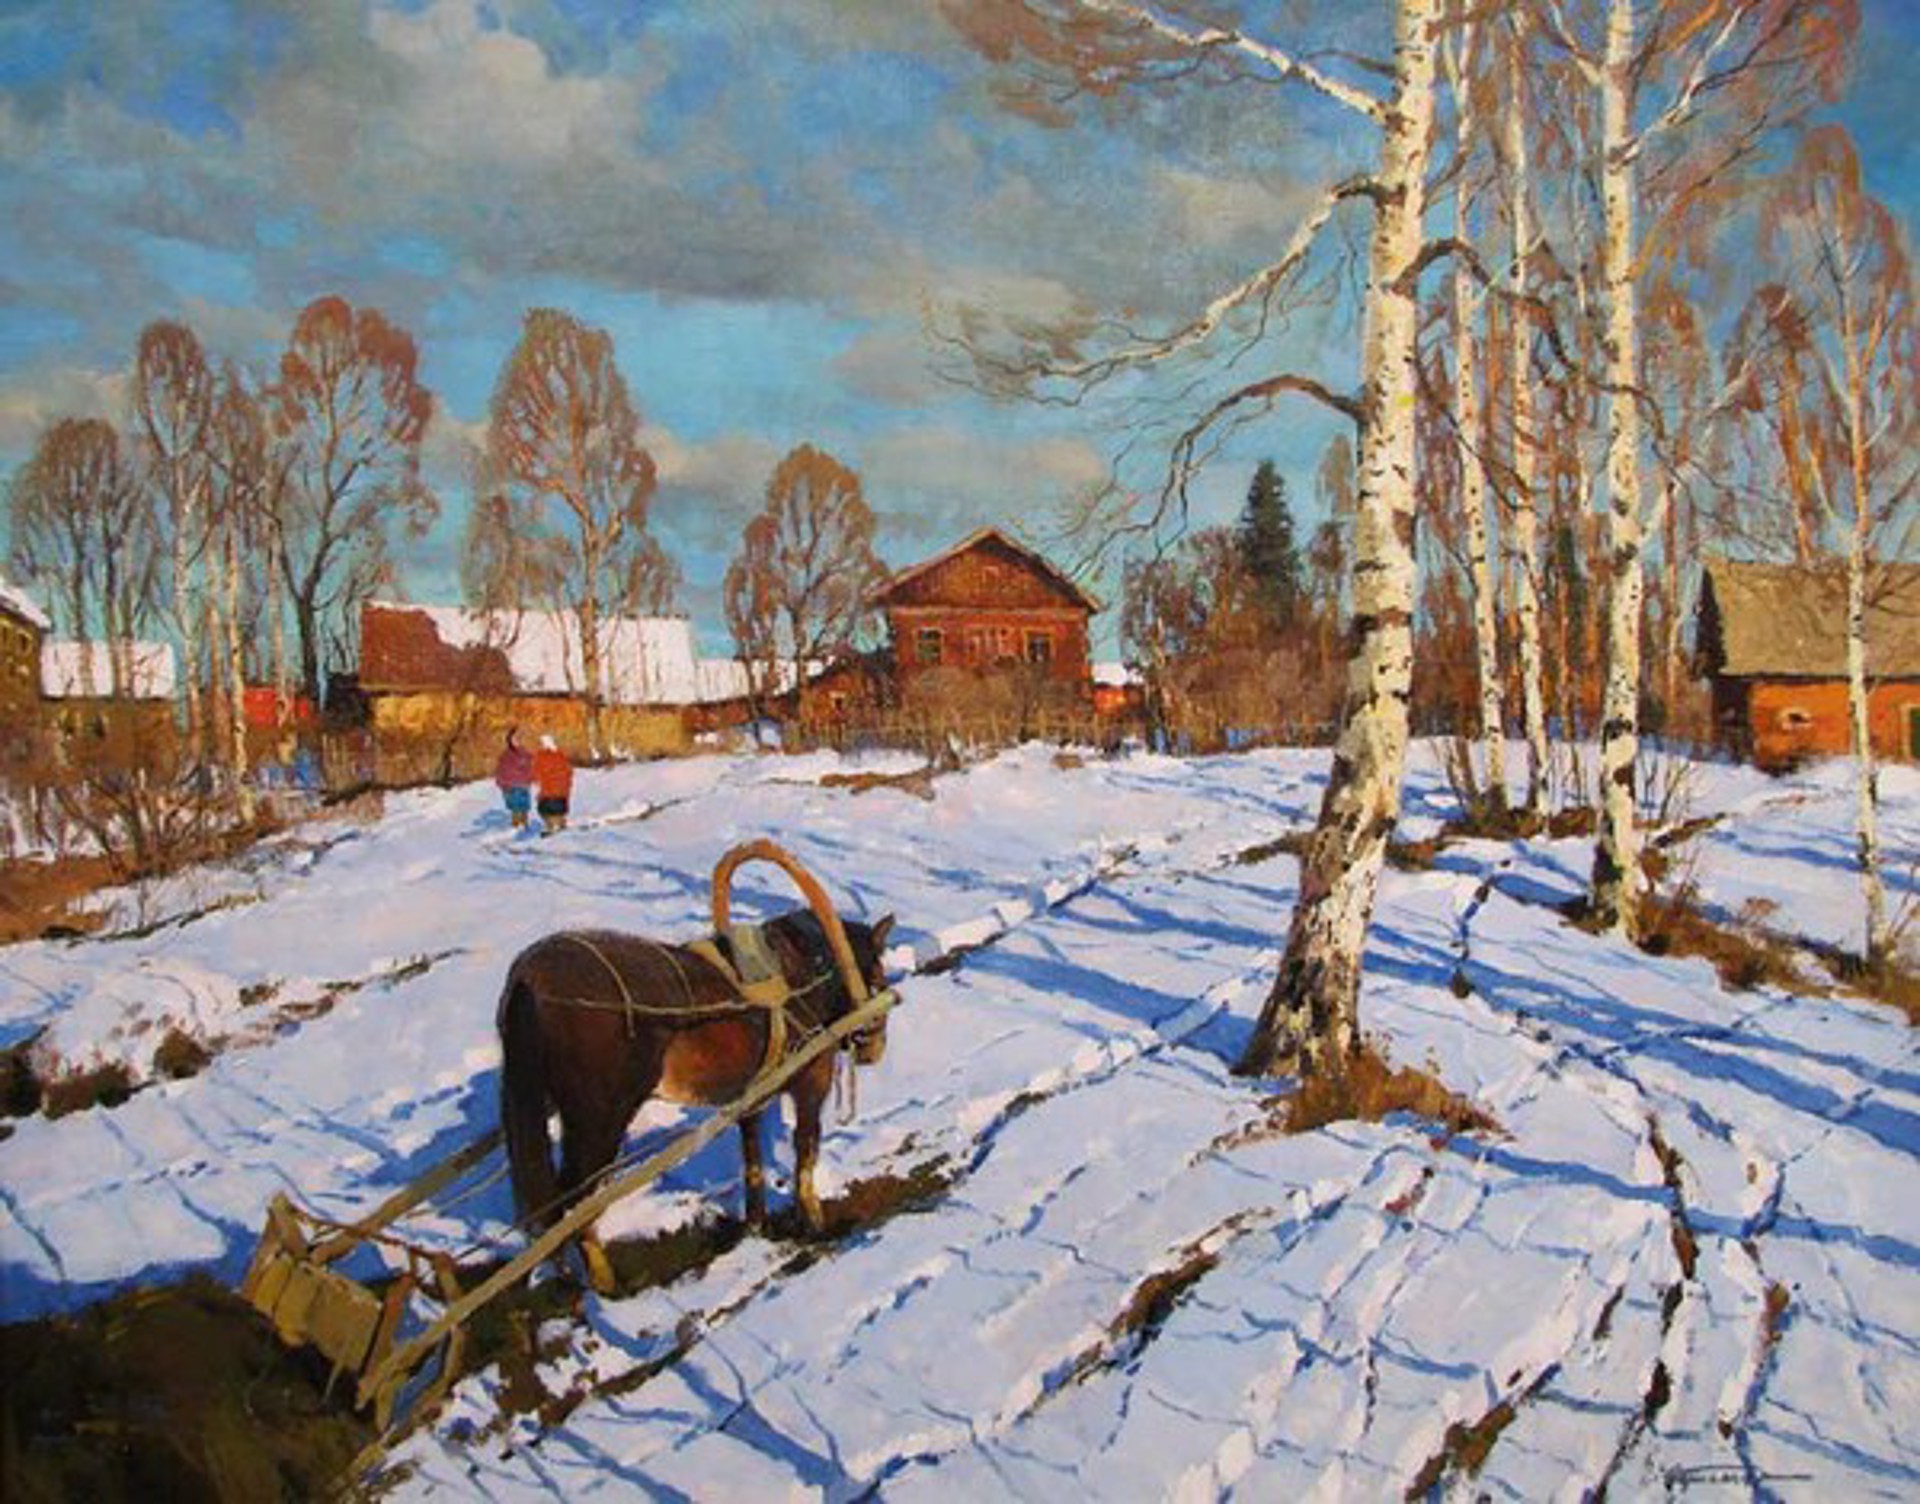 In the Village by Alexander Kremer